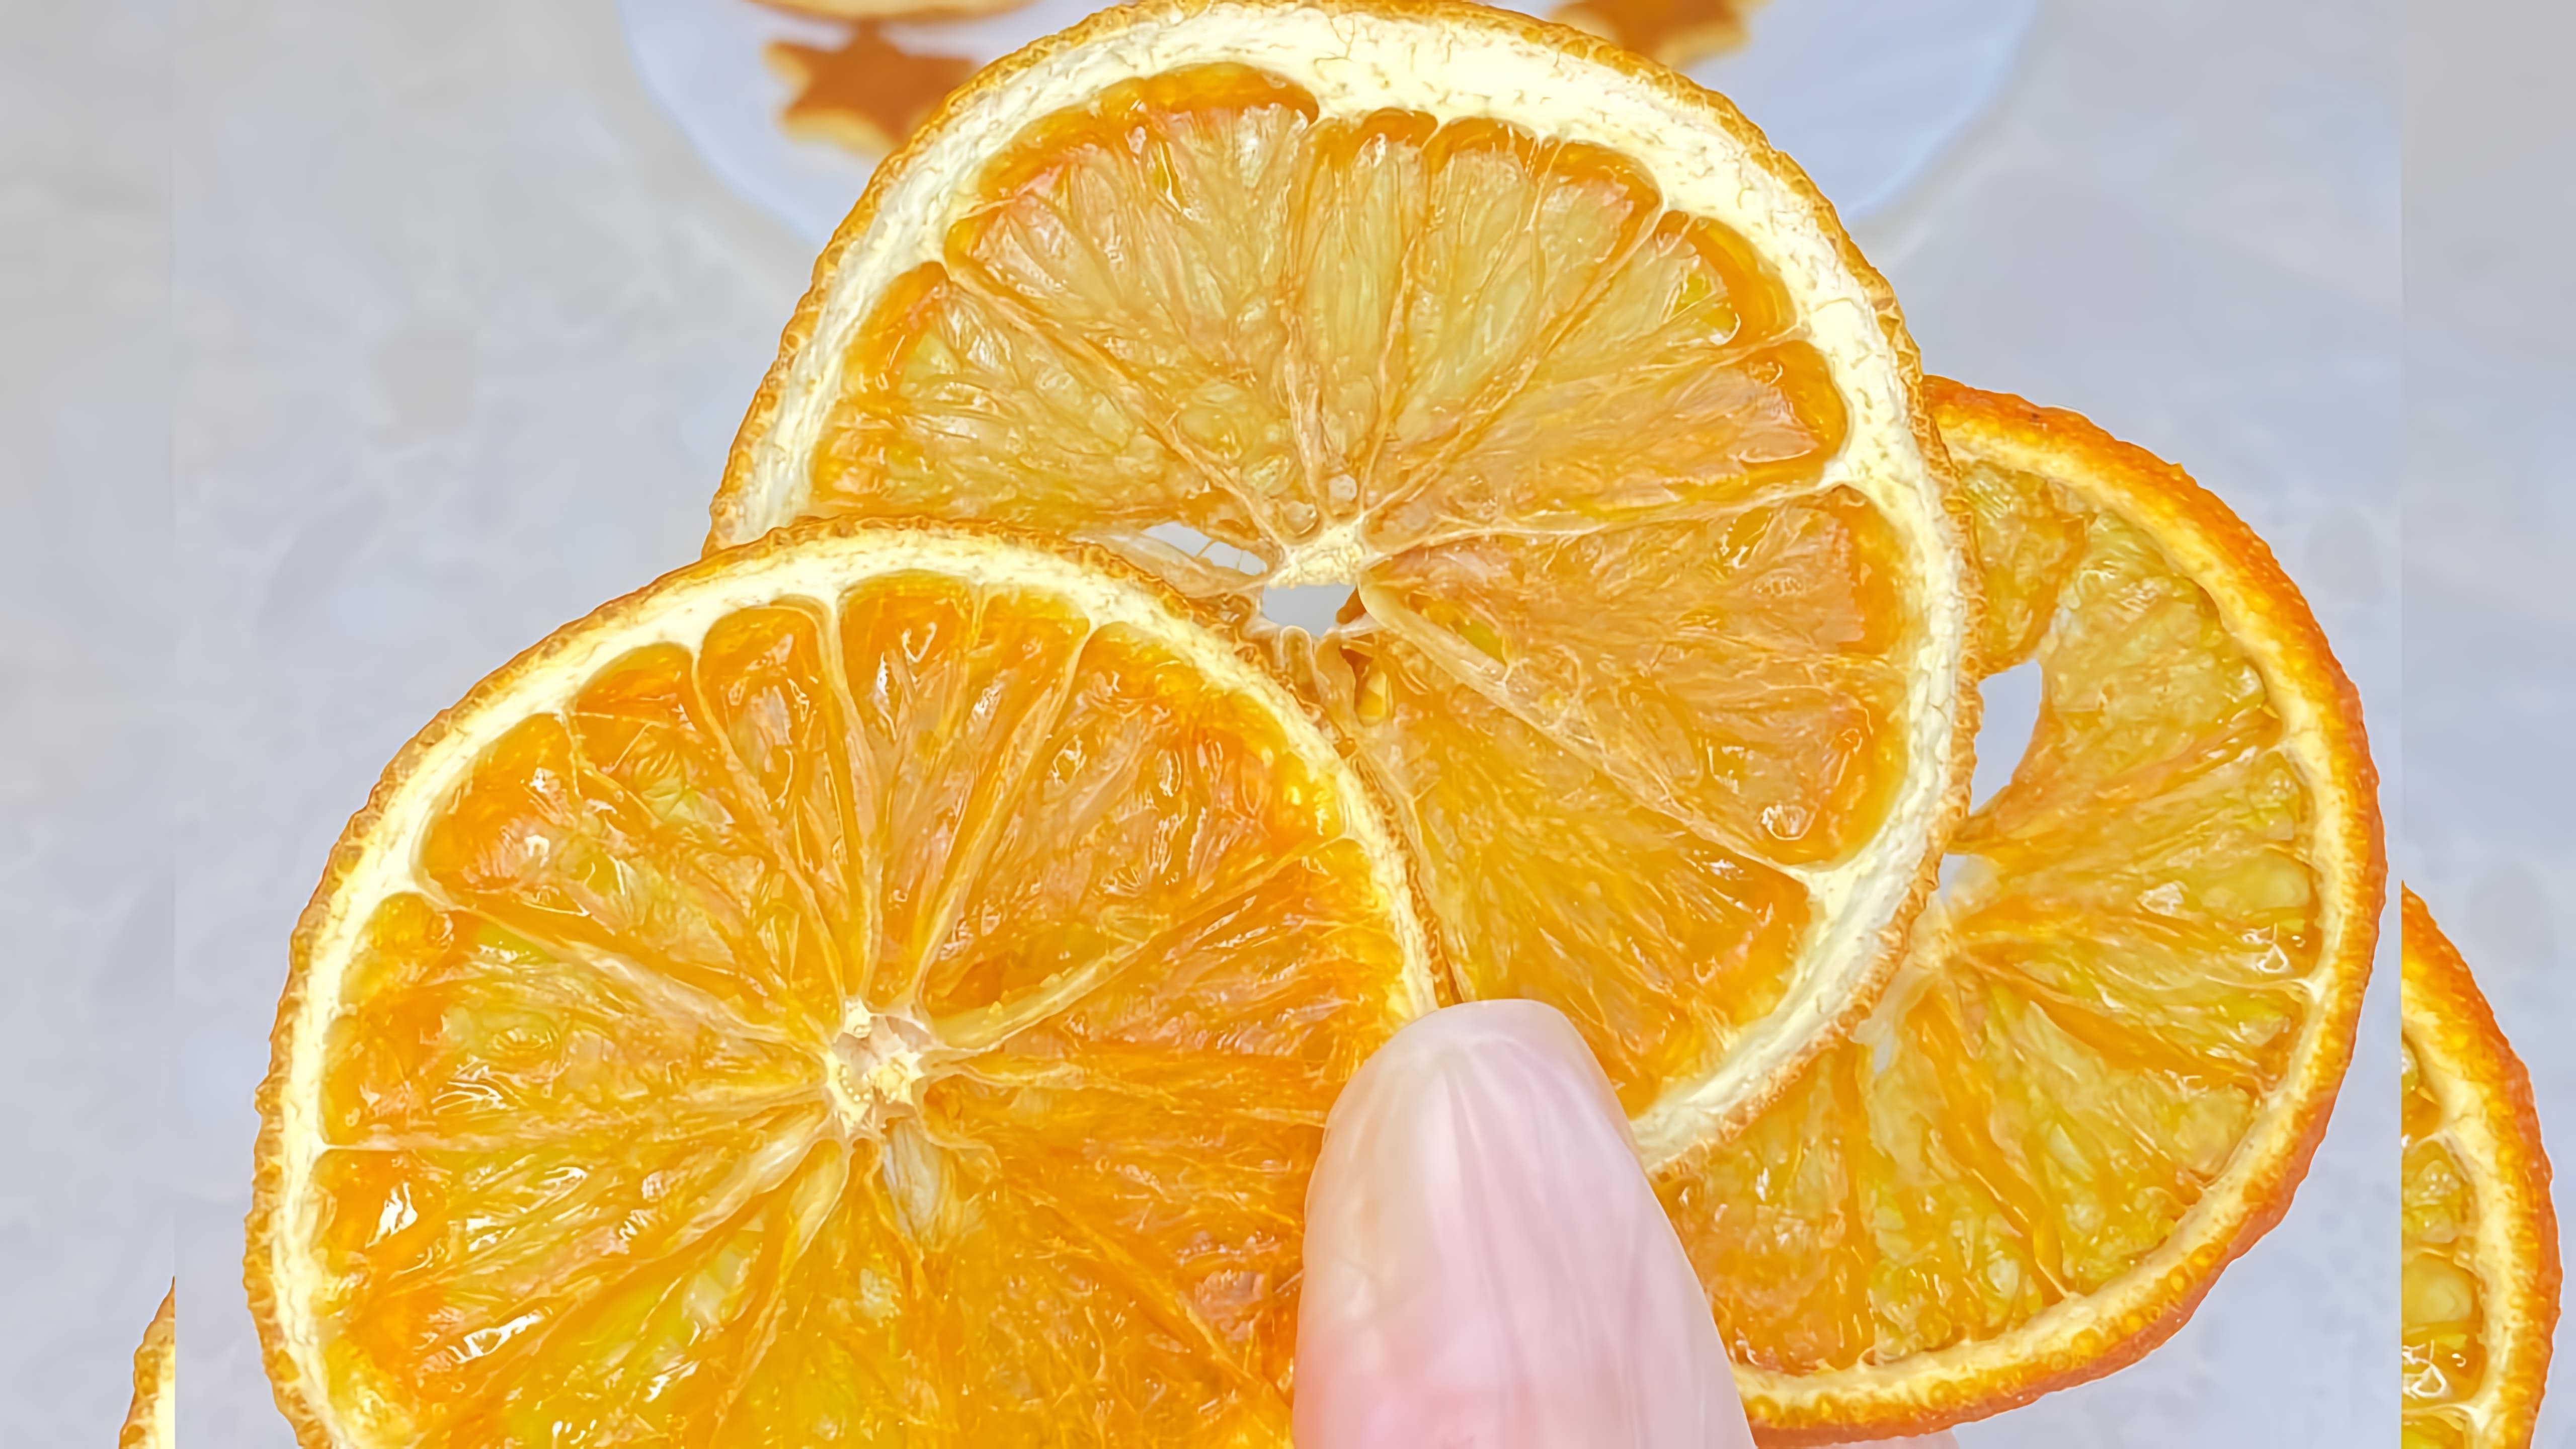 В этом видео-ролике будет показано, как высушить апельсин колечками для фуд-фото, декора тортов и выпечки